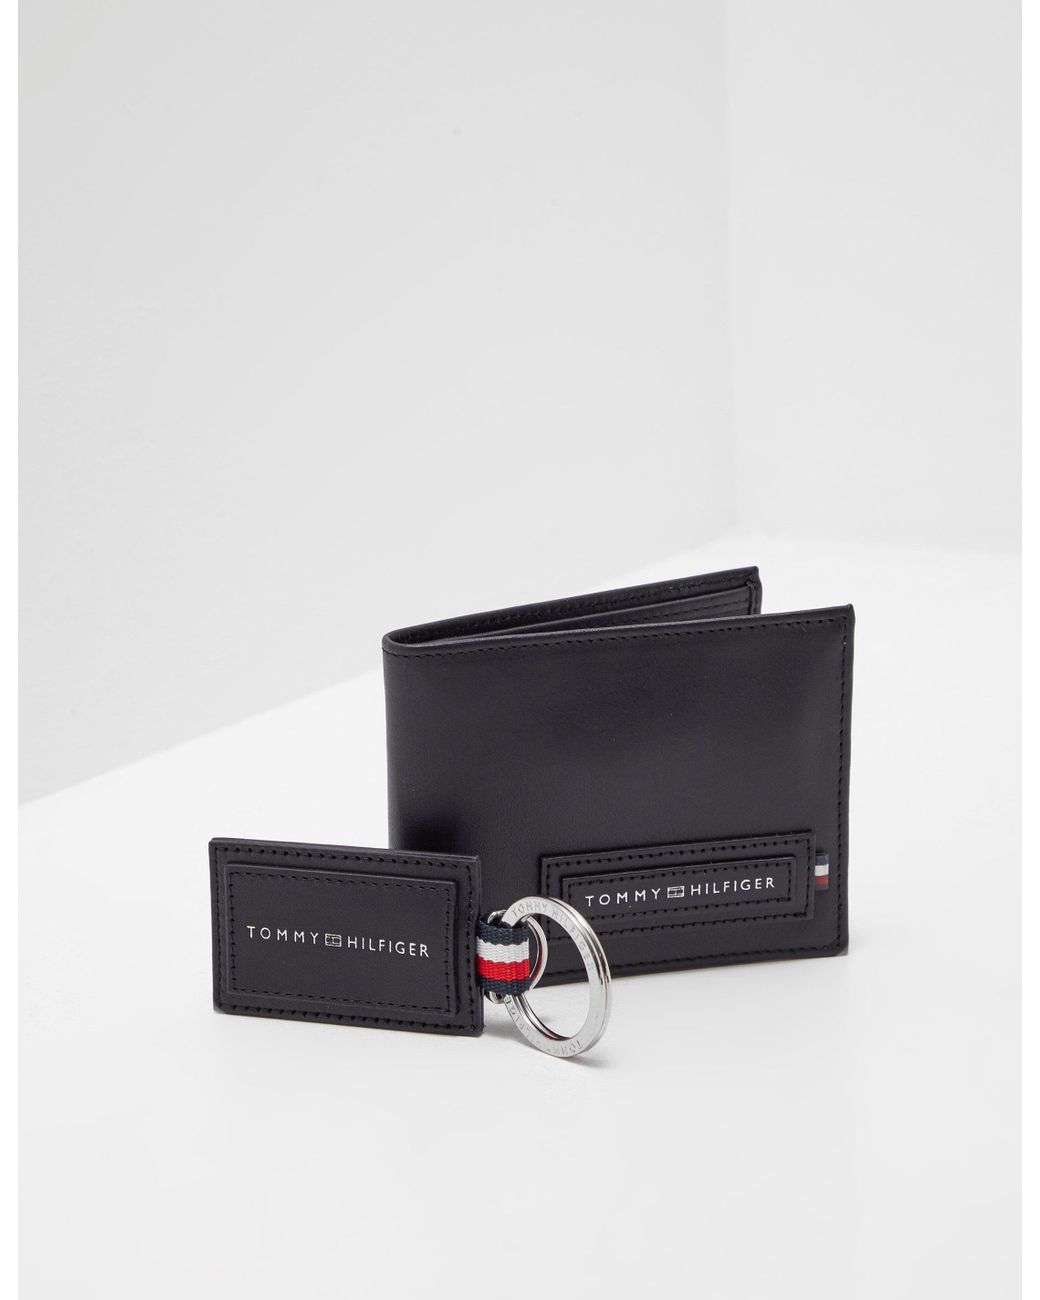 Tommy Hilfiger Wallet And Keyring Gift Set Black for Men | Lyst